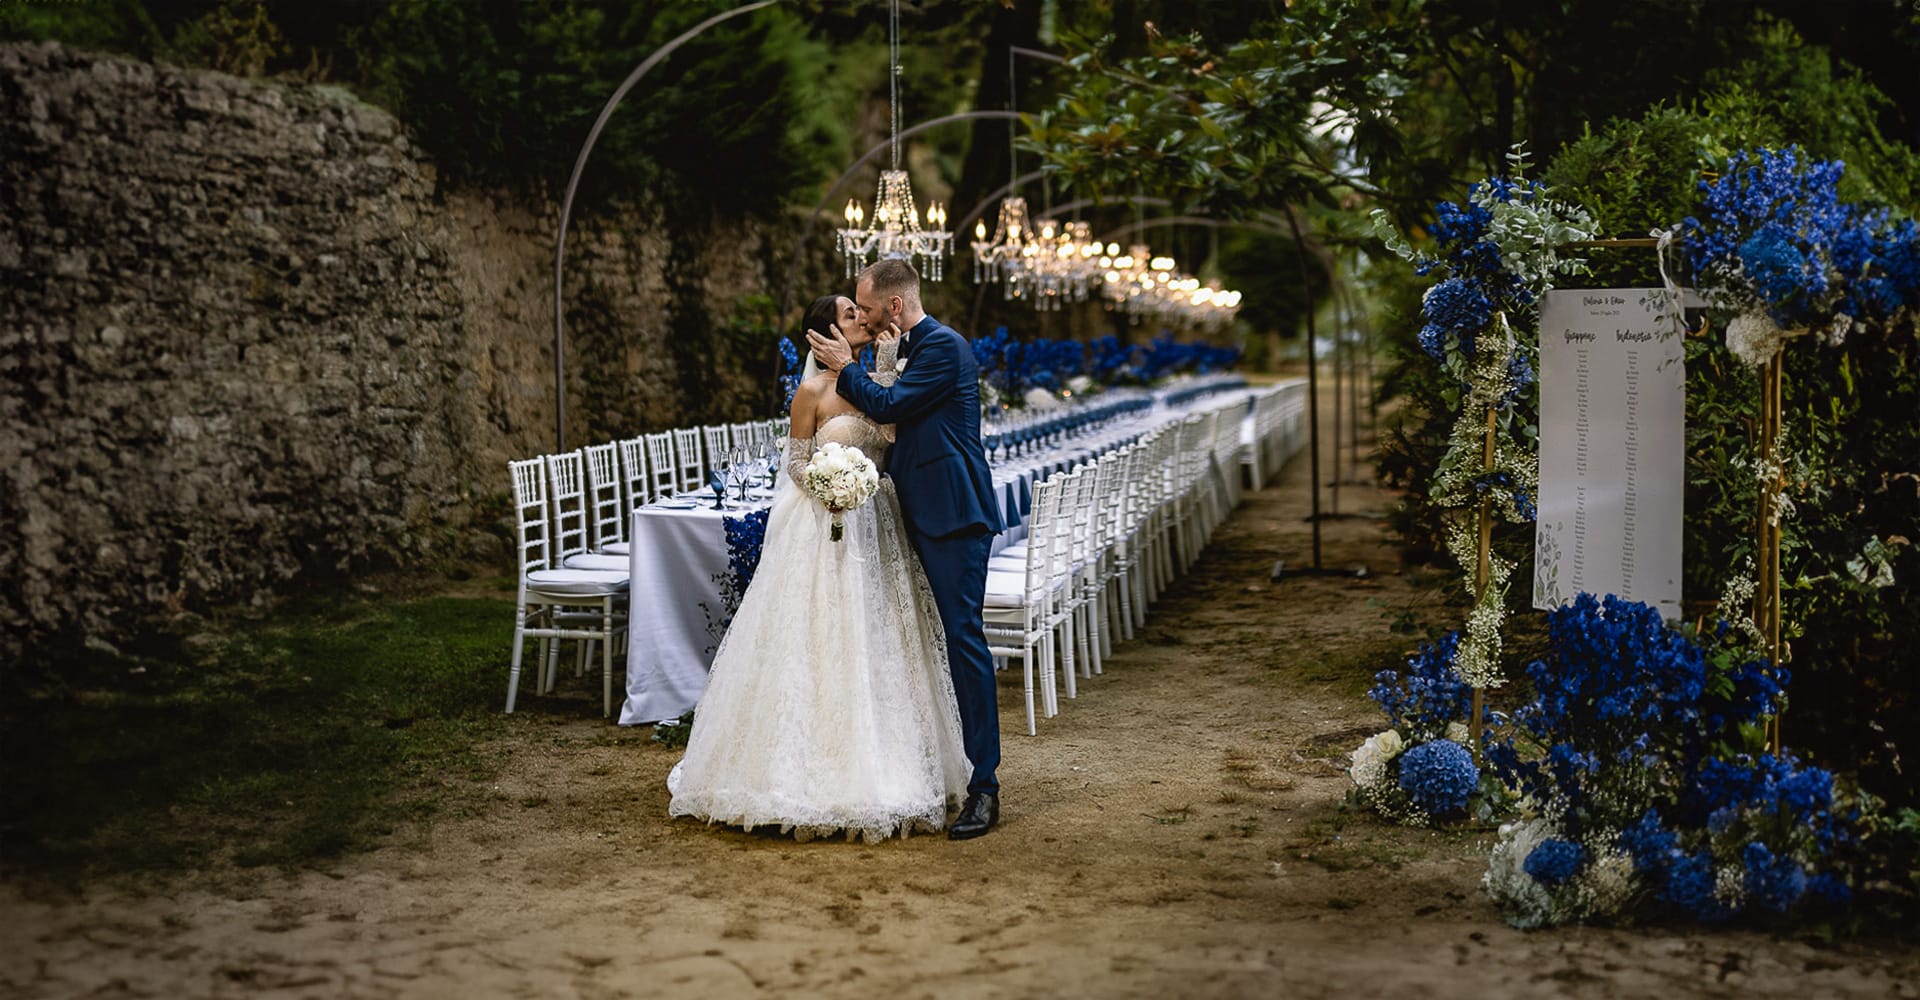 Matrimonio da favola al Castello Canali. Valeria e Omar si baciano davanti al loro bellissimo tavolo imperiale in un viale del parco. Fiori e biccheri sui toni del blu. Lampadari a goccia.